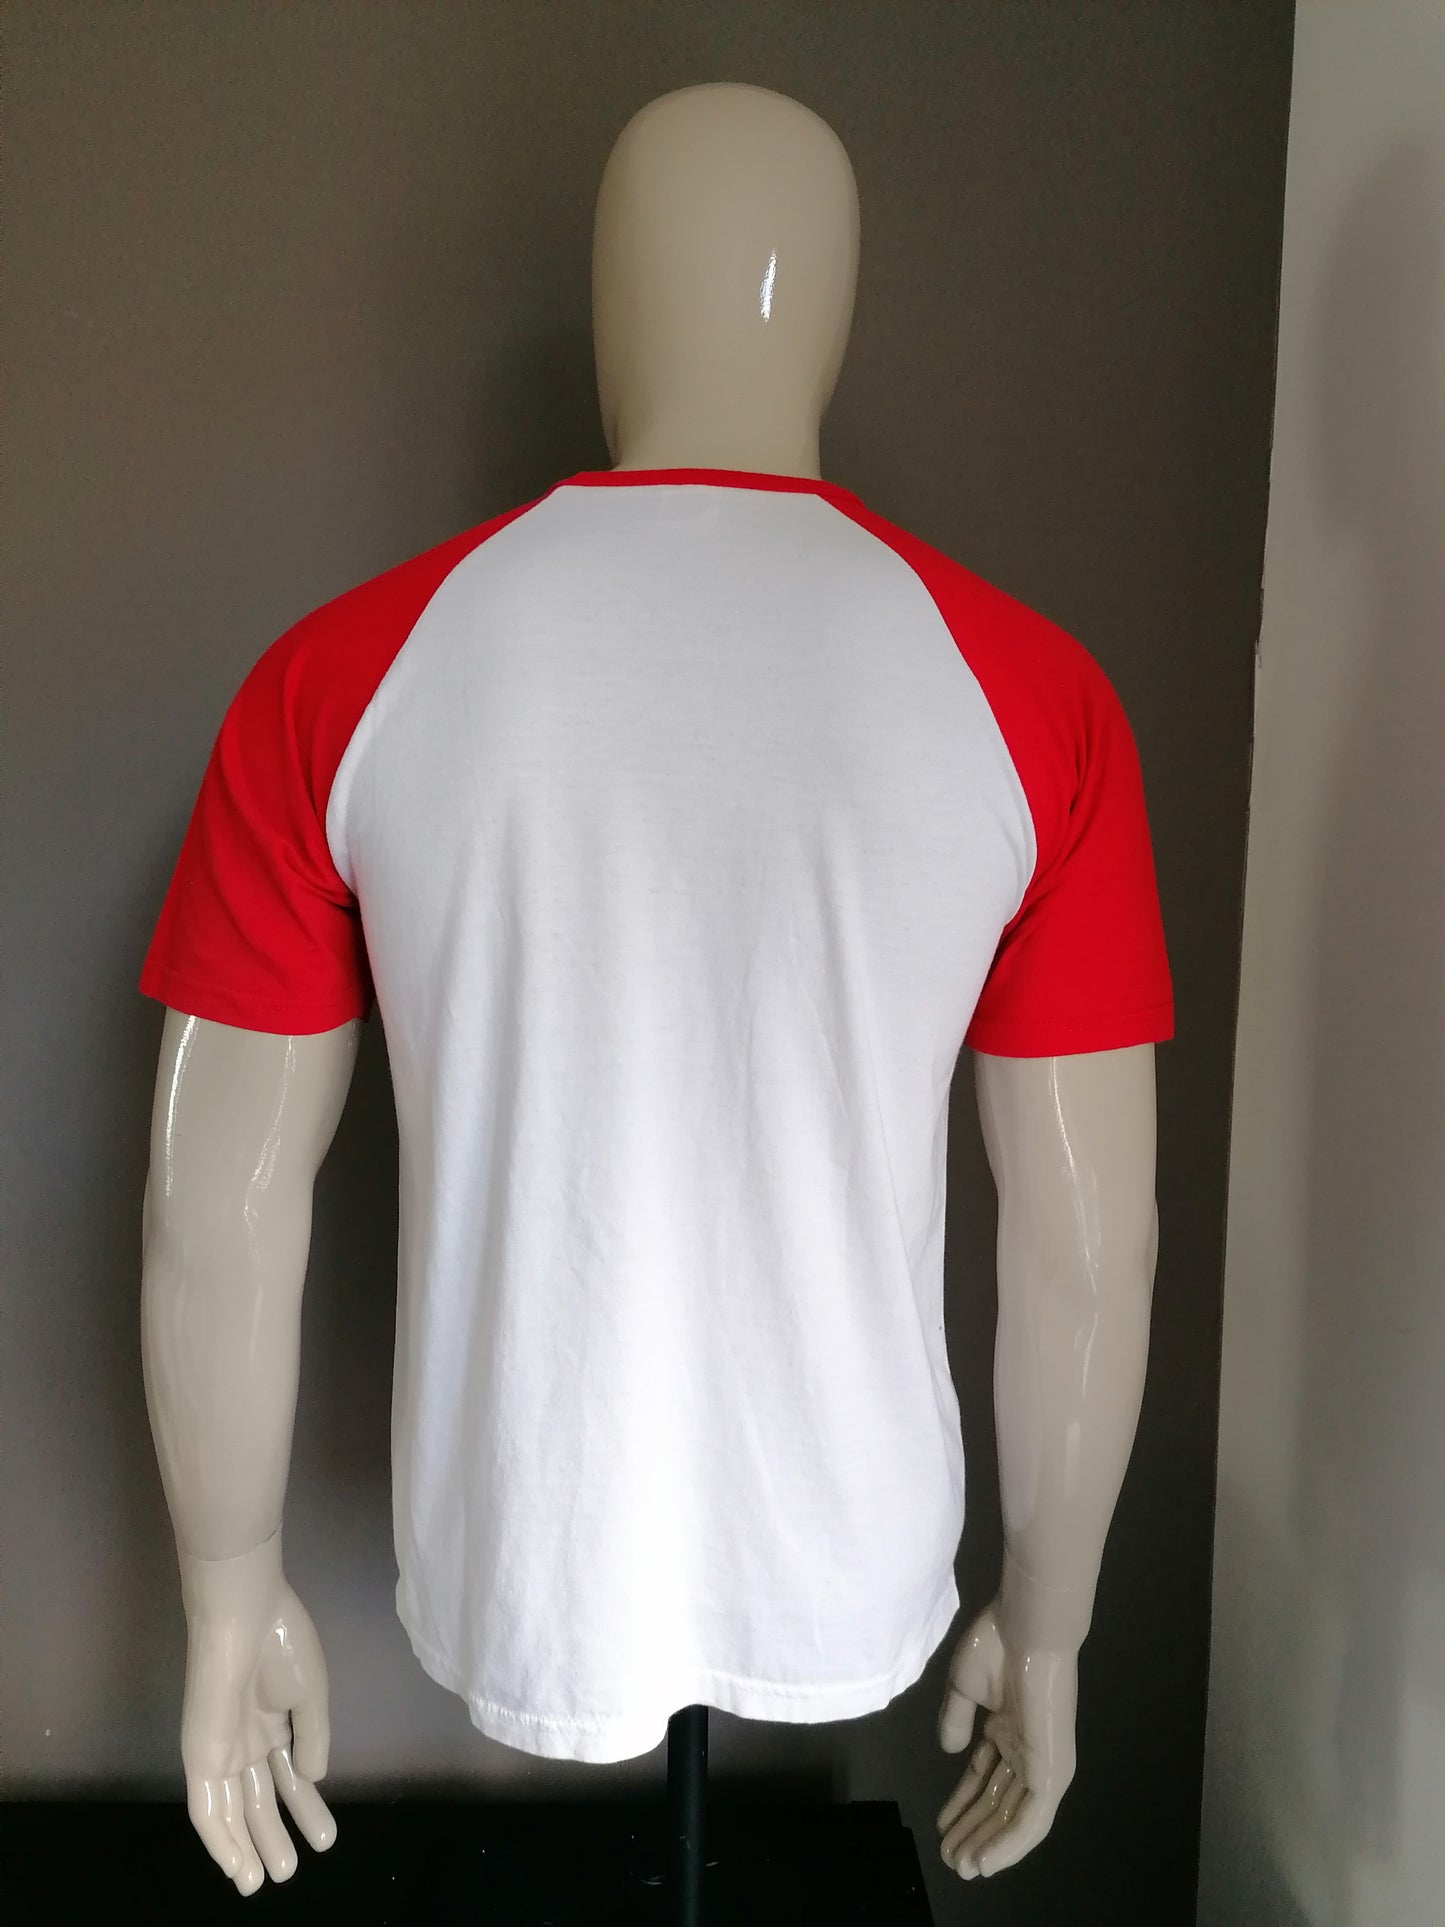 Equipo de camiseta Ajax Vintage Gaal. Negro blanco rojo. Talla M.